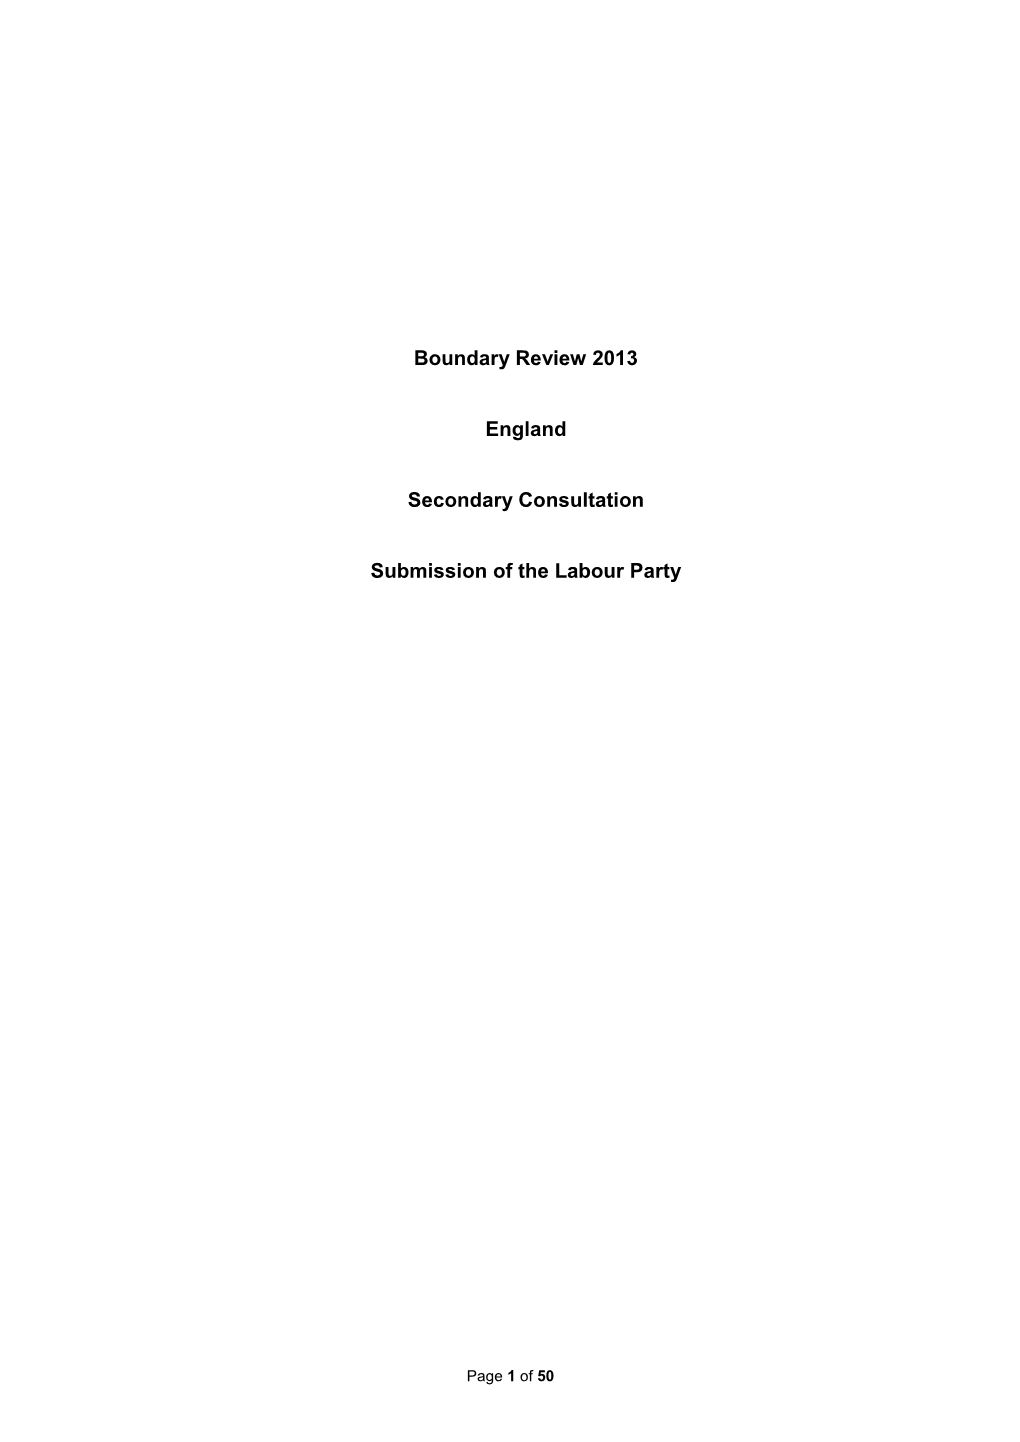 Boundary Review 2013 England Secondary Consultation